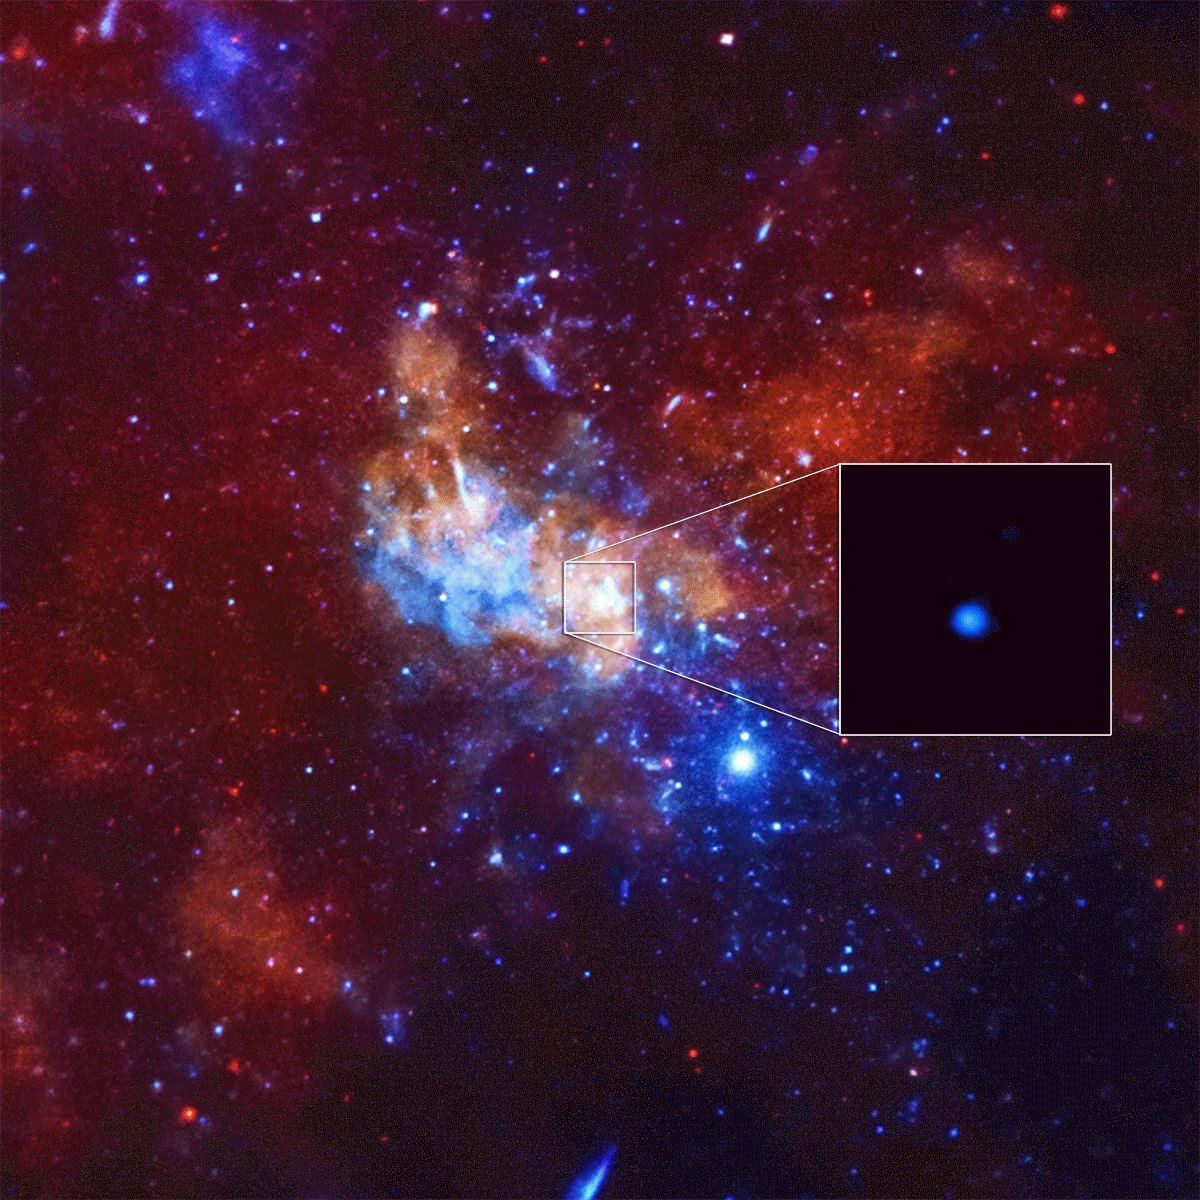 El agujero negro supermasivo de nuestra galaxia Sagitario A